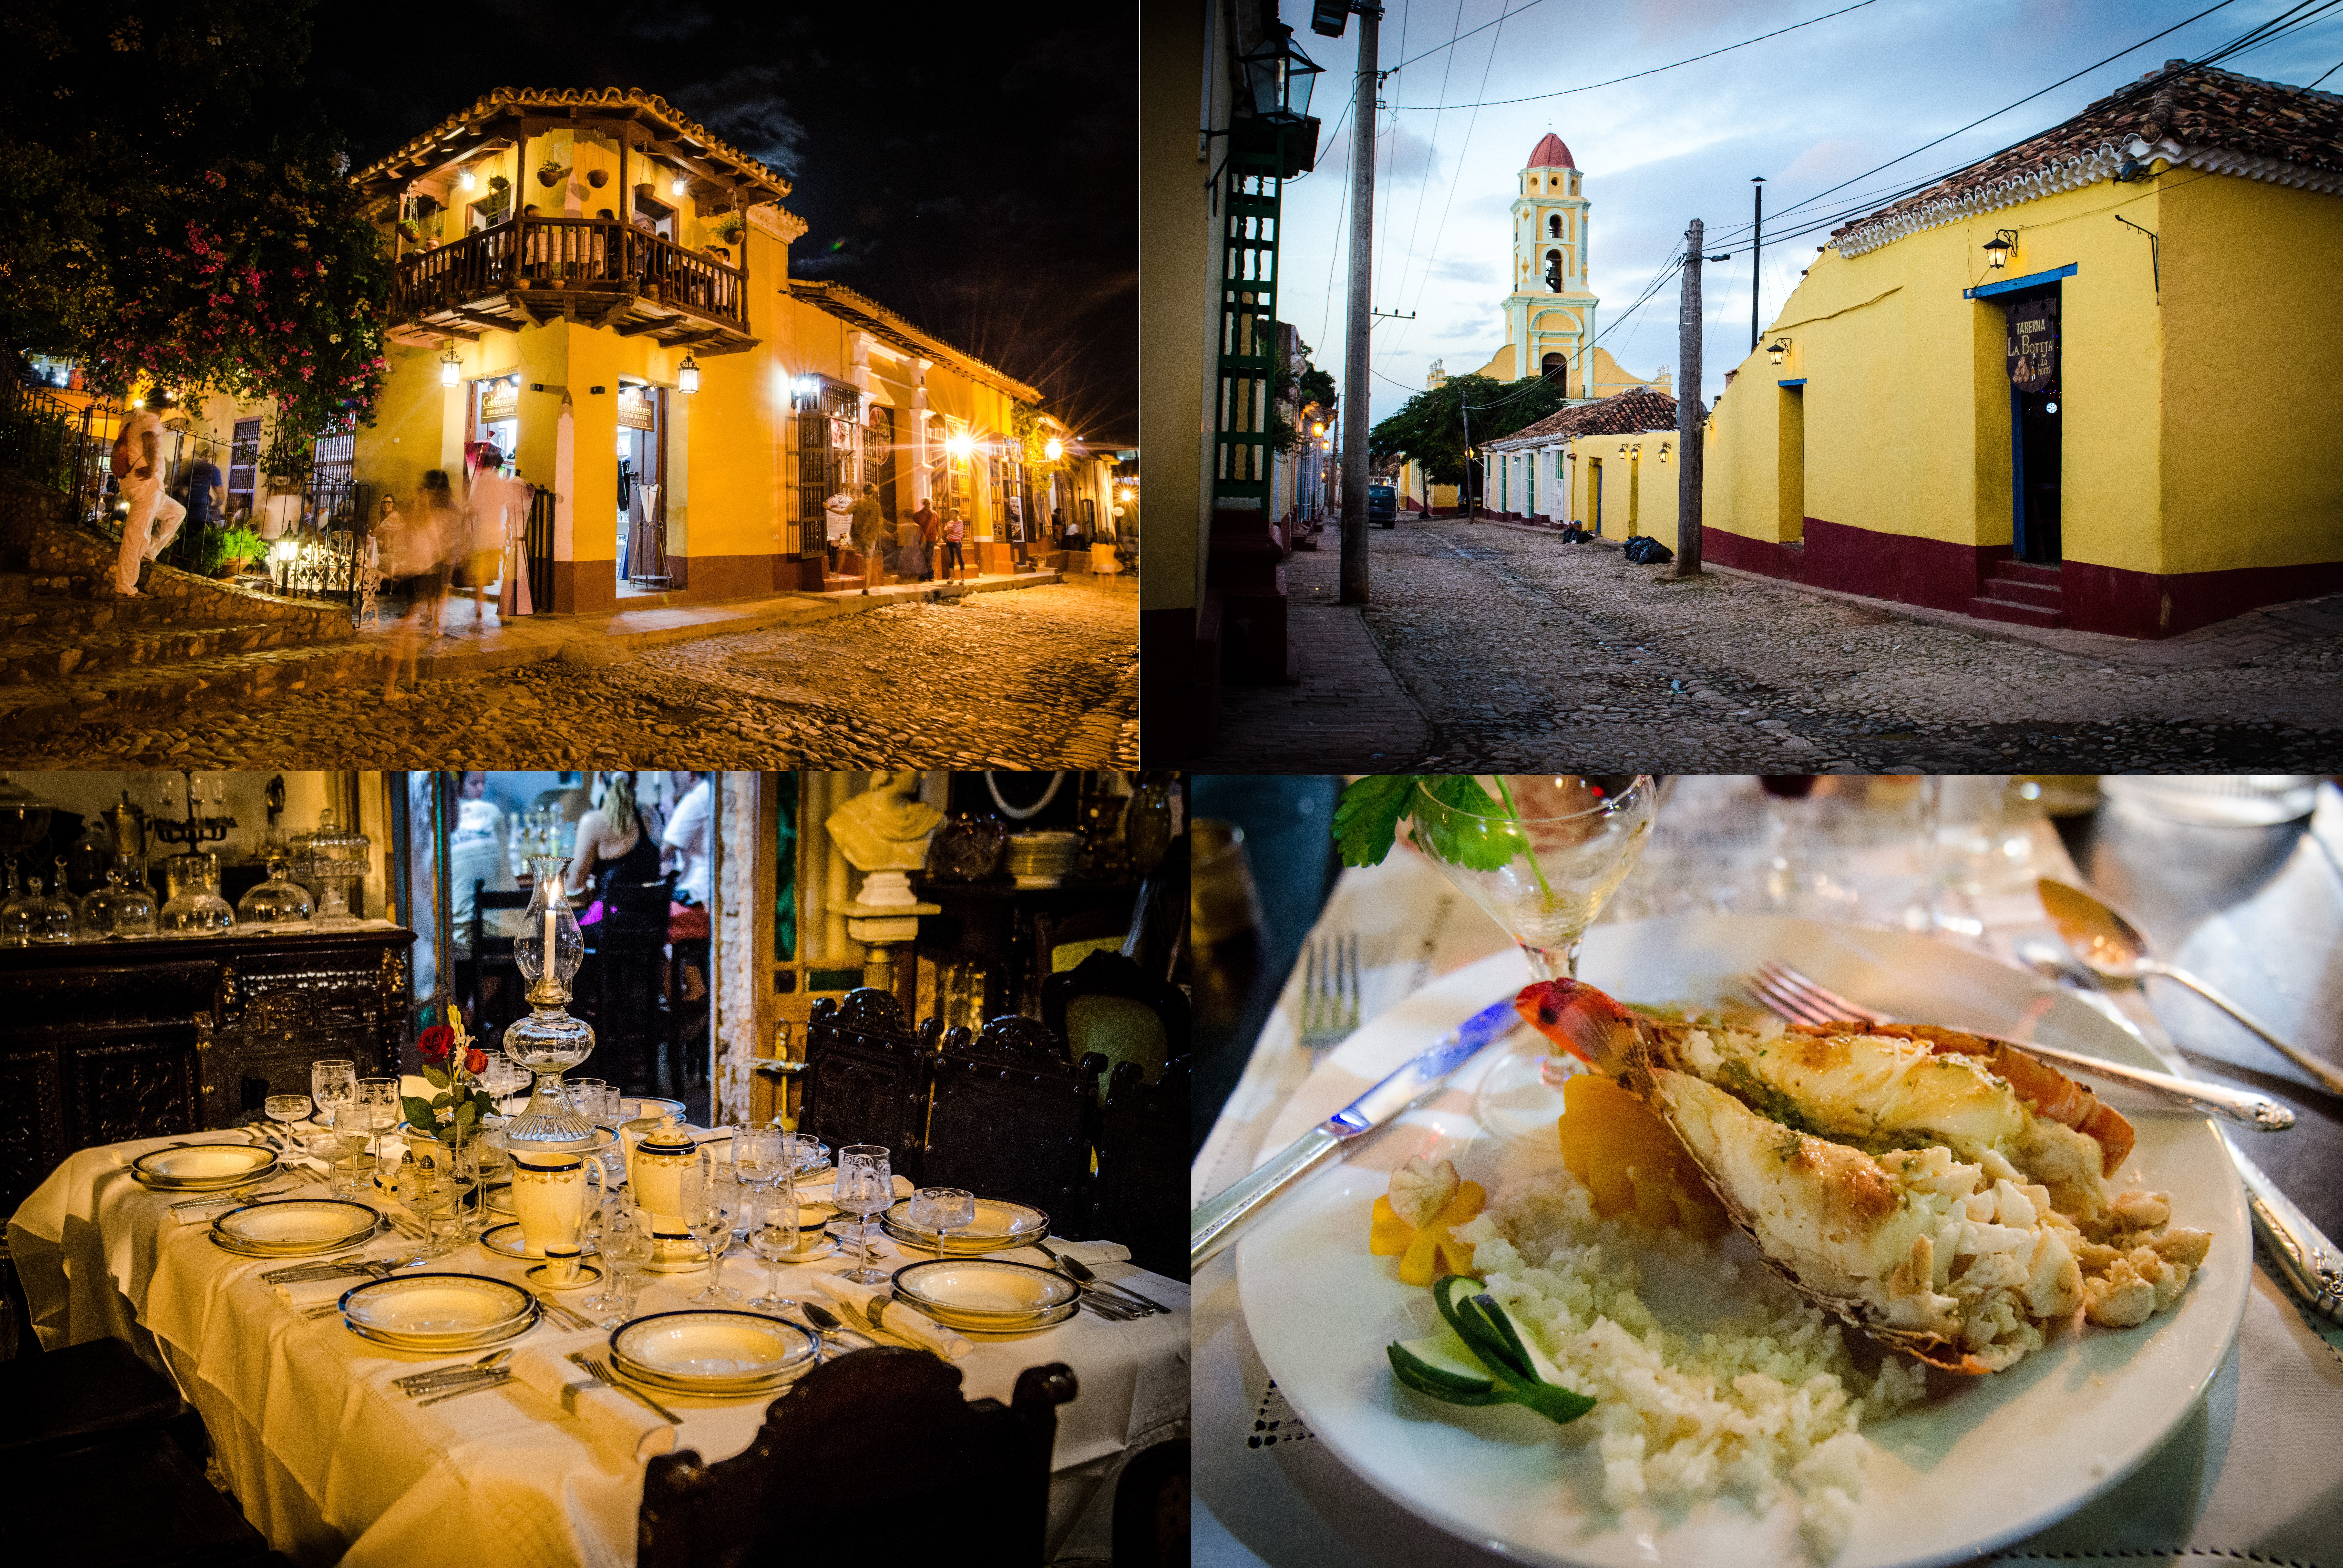 时光仿佛凝固了一般，Trinidad仍然保持了17世纪的米黄色建筑和坑洼石板路。当夜幕降临，这里便是音乐的天堂。大家在城镇中心的广场上唱歌跳舞。10刀一盘的龙虾配上mojito，微醺得让你误以为上了天堂。